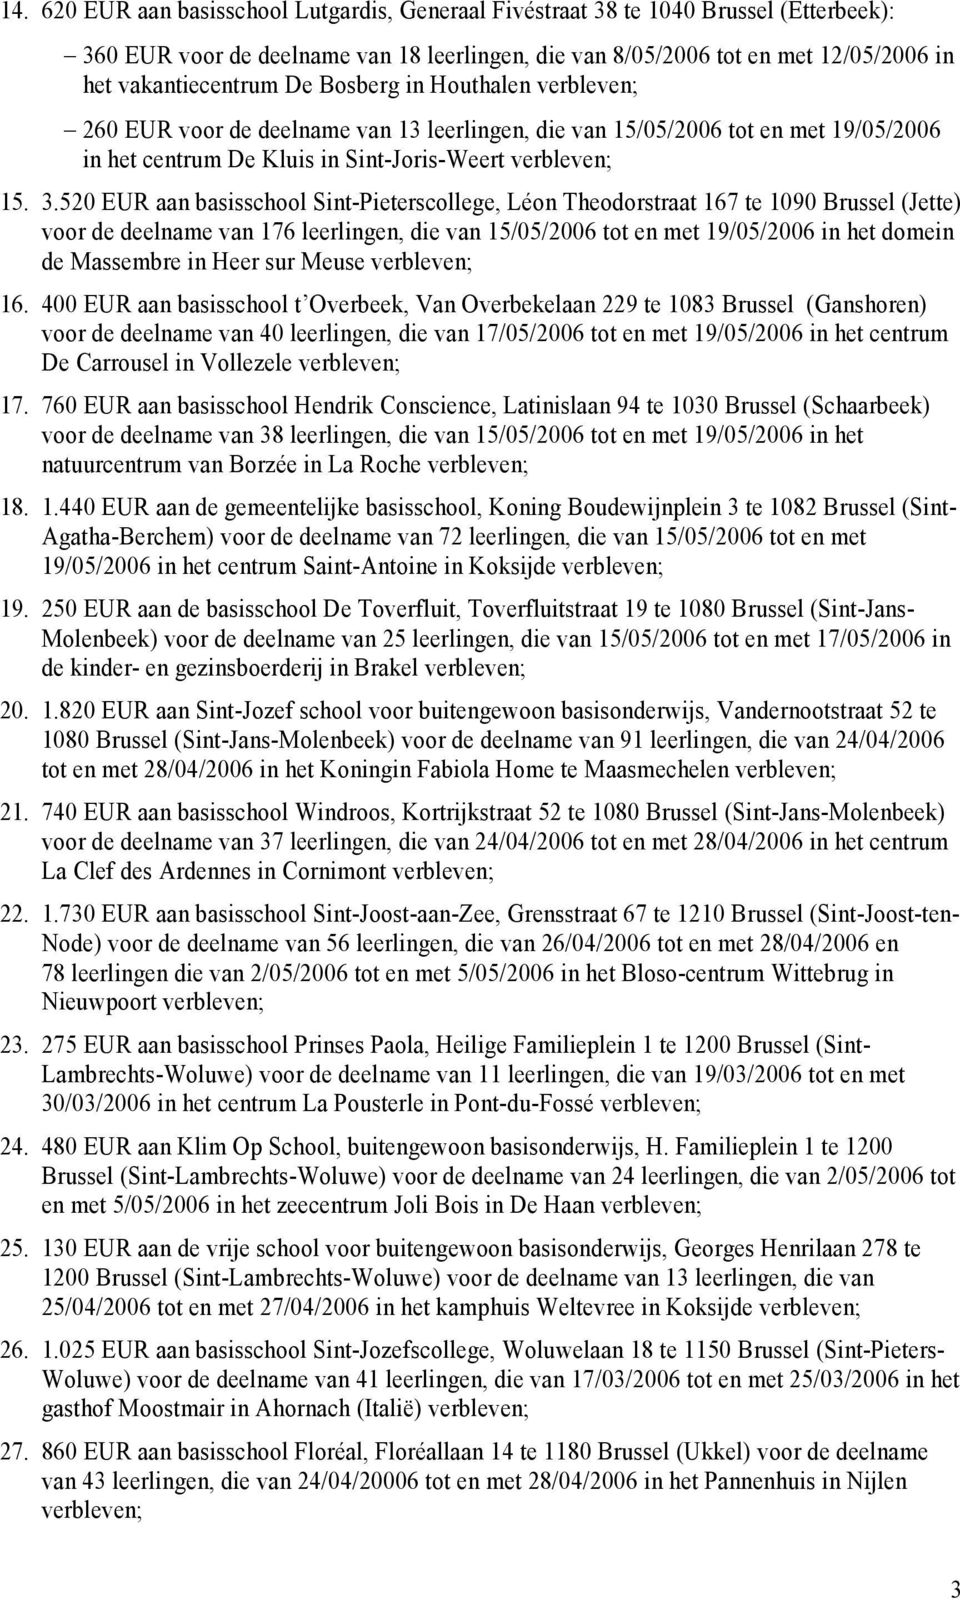 520 EUR aan basisschool Sint Pieterscollege, Léon Theodorstraat 167 te 1090 Brussel (Jette) voor de deelname van 176 leerlingen, die van 15/05/2006 tot en met 19/05/2006 in het domein de Massembre in